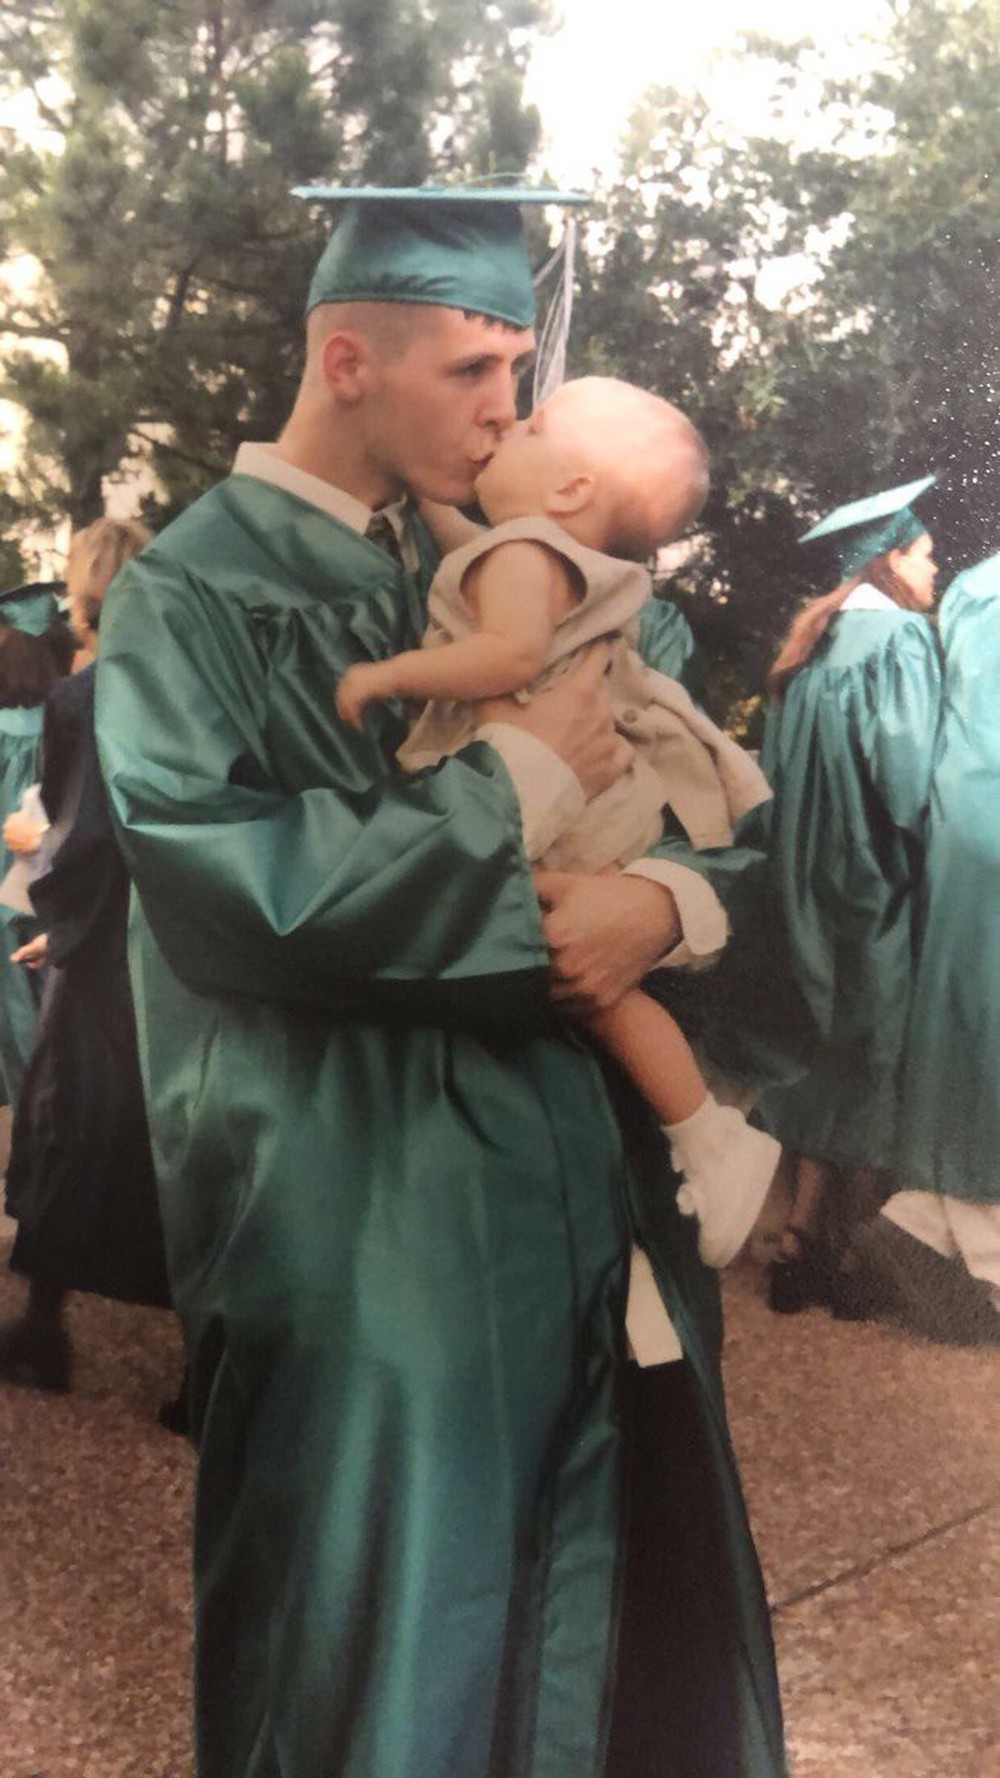 Ảnh ngày ấy bây giờ cực độc: Chàng trai 19 tuổi ôm hôn con gái ngày tốt nghiệp, 18 năm sau làm điều tương tự trong lễ ra trường của đứa trẻ - Ảnh 2.